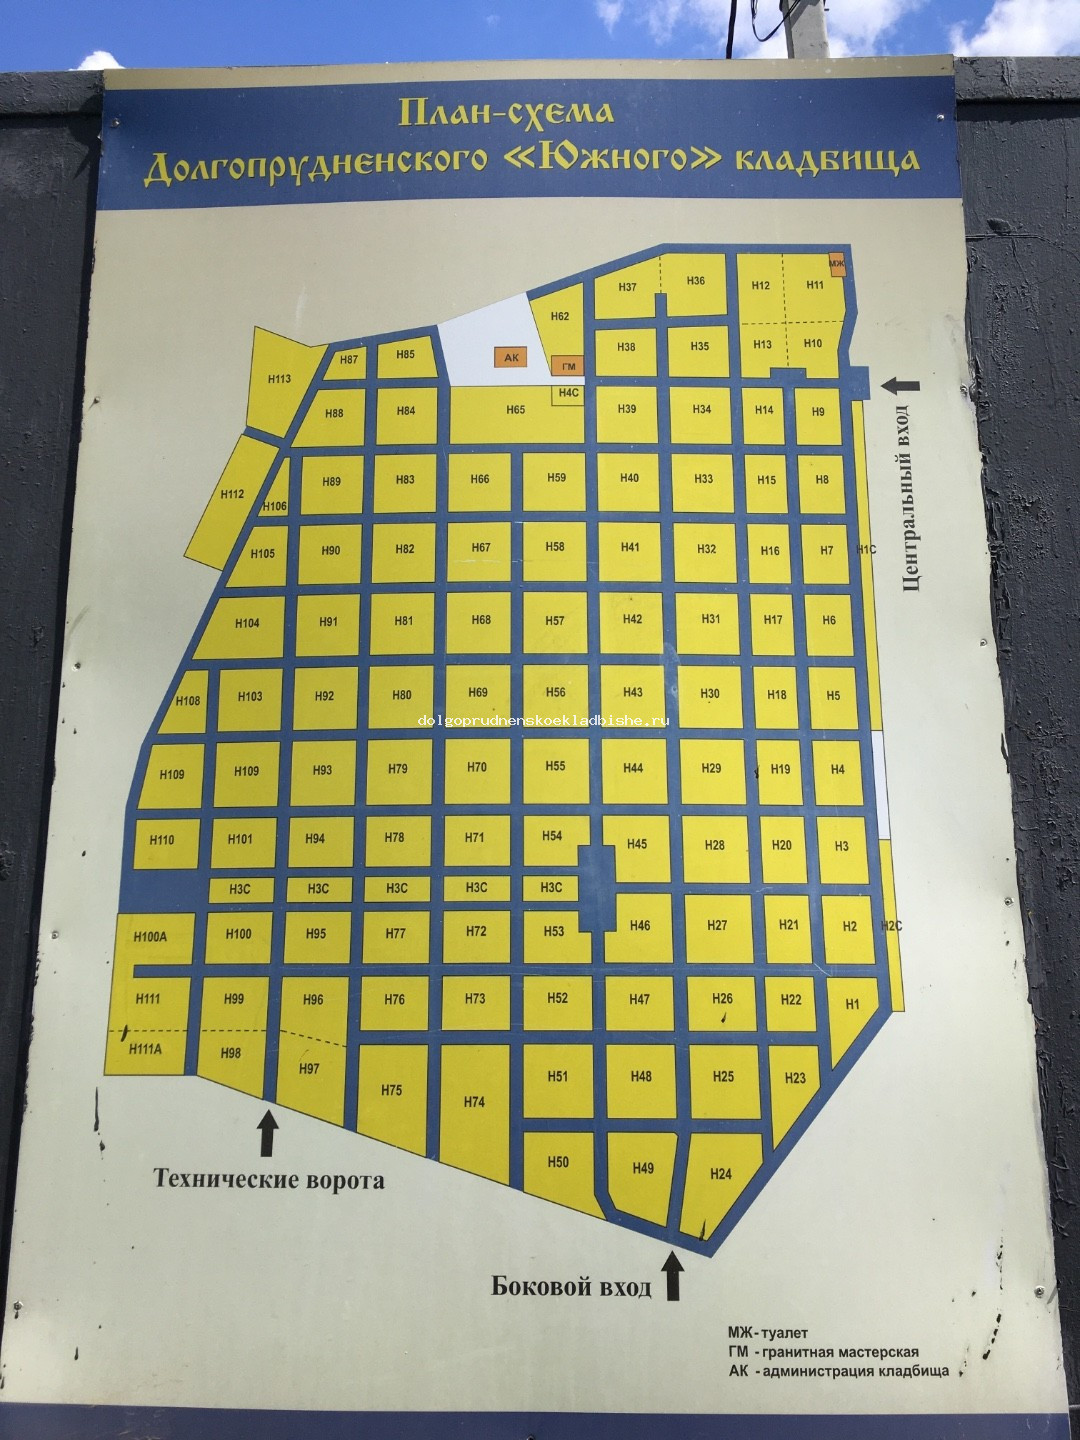  План-схема участков Долгопрудненского кладбища южная территория